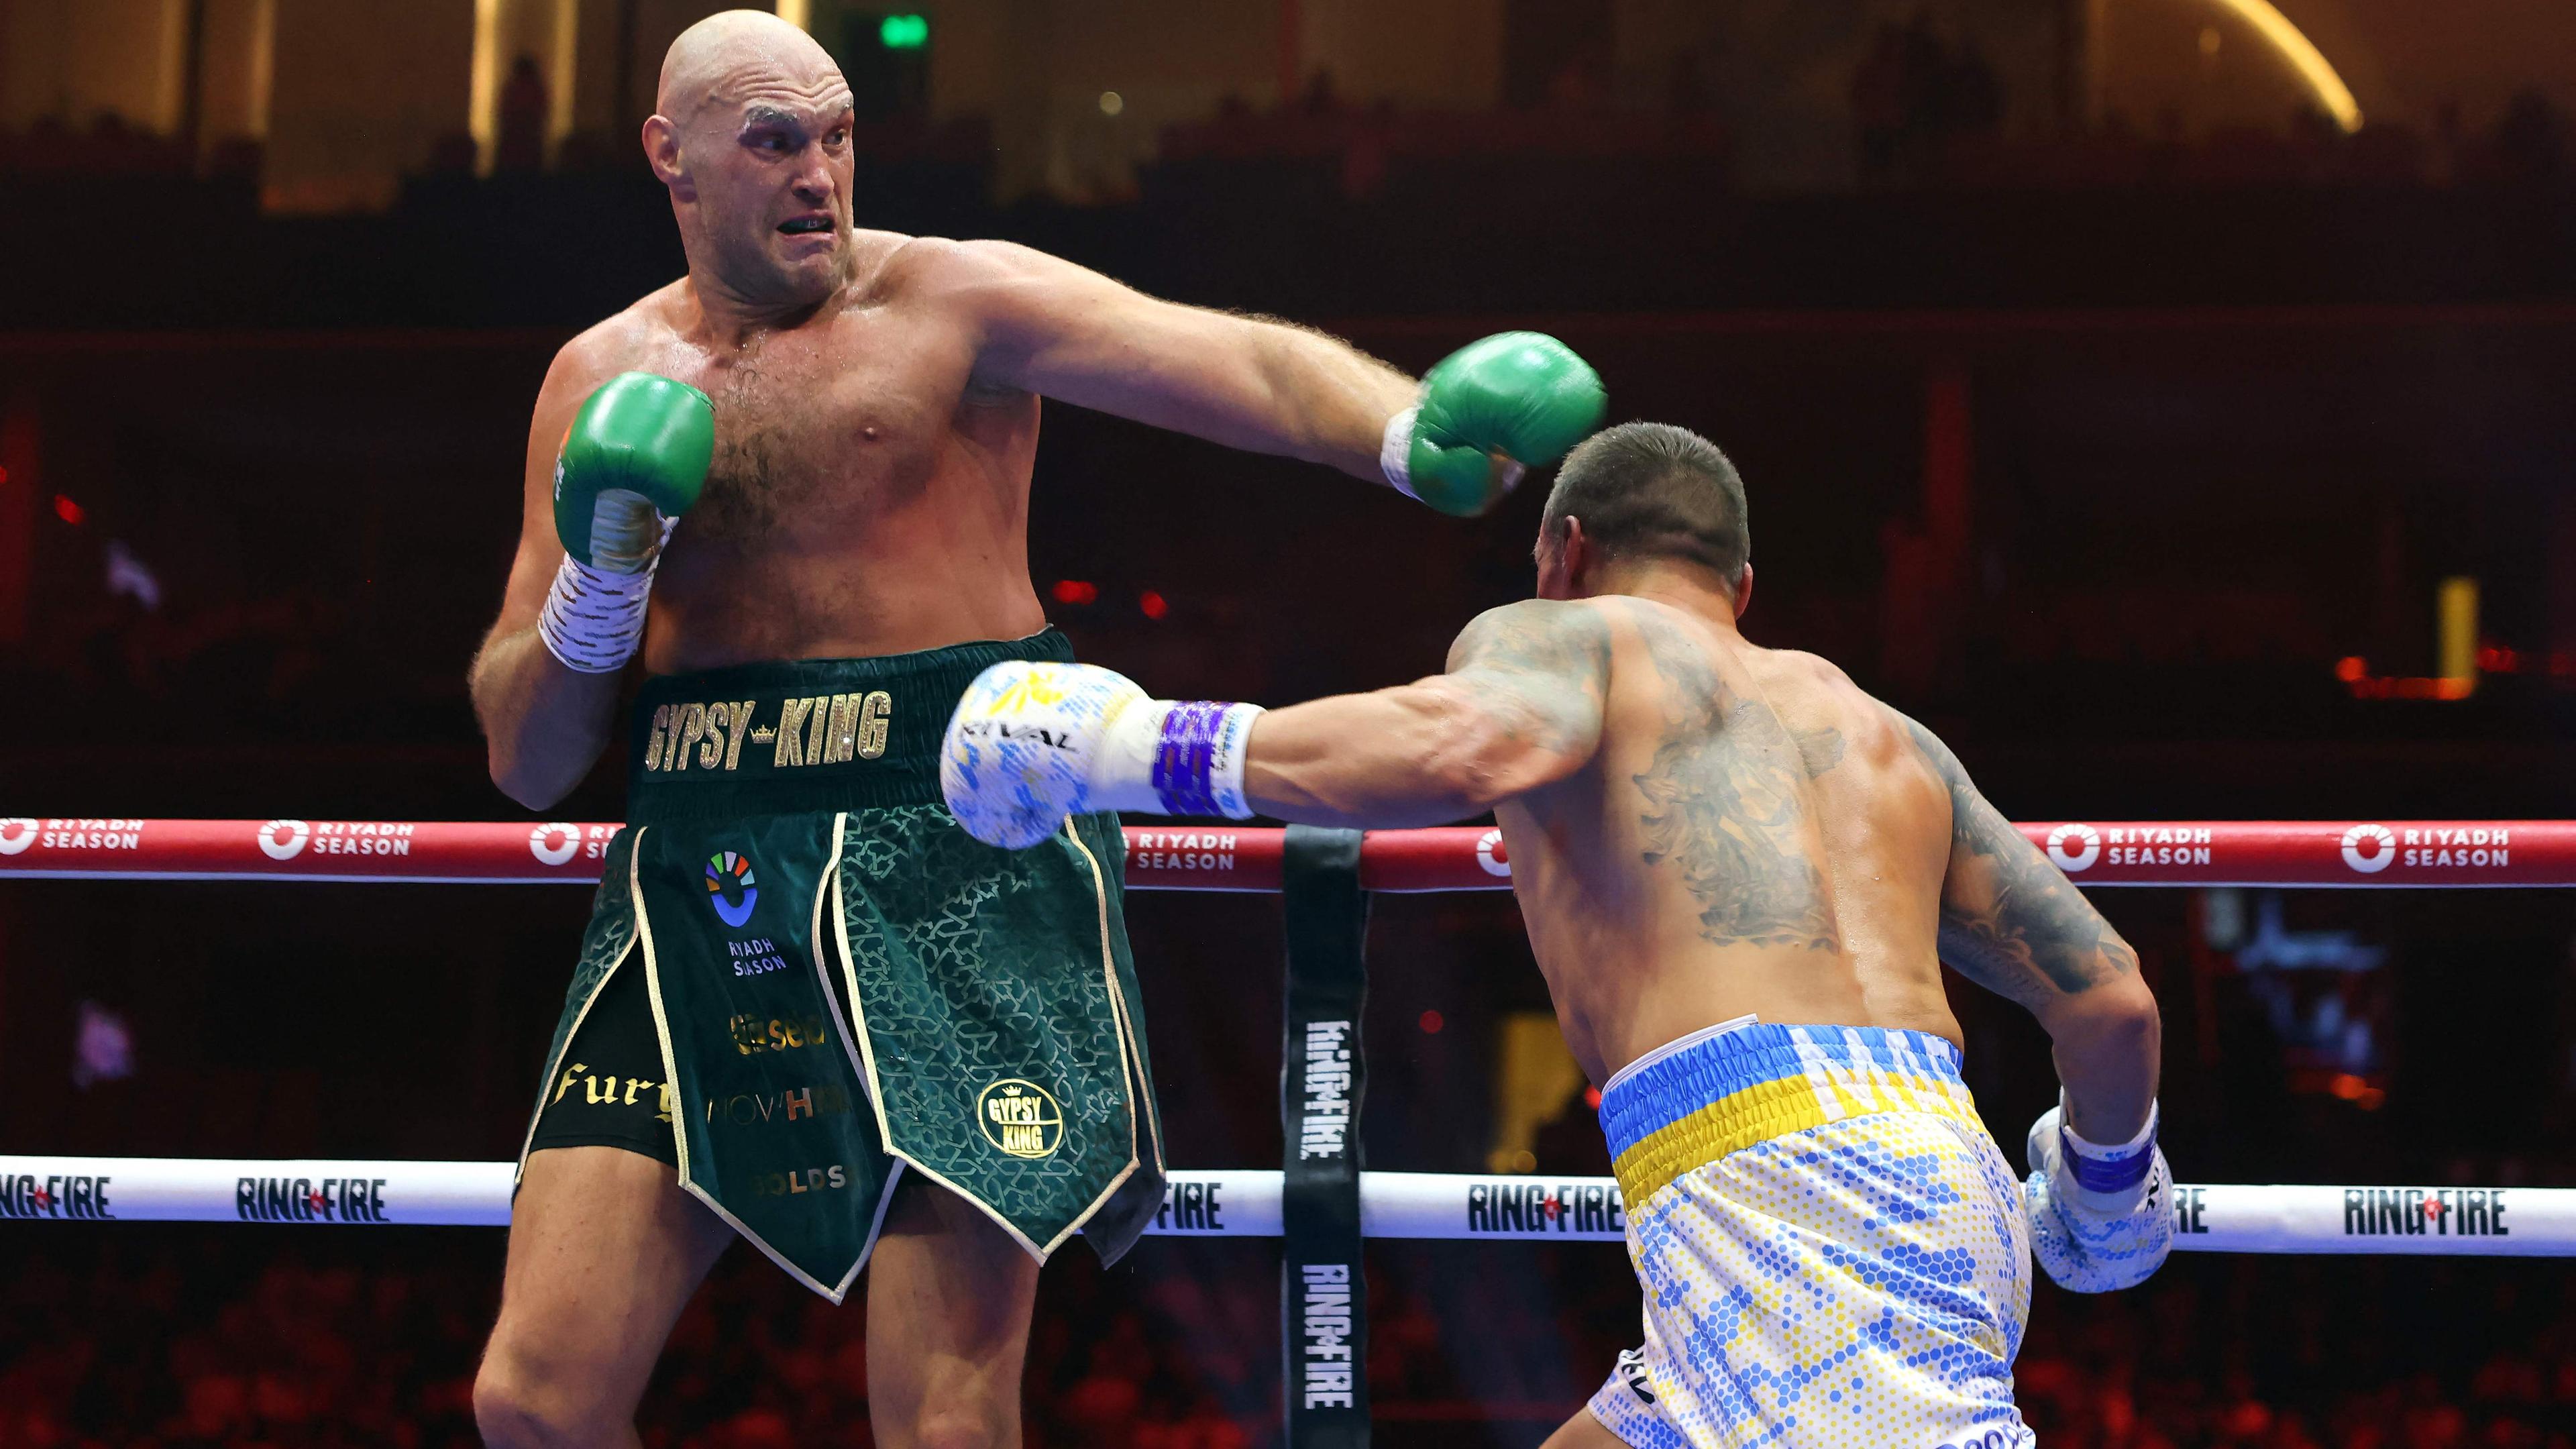 Der Ukrainer Oleksandr Usyk kämpft gegen den Briten Tyson Fury während eines Box-Weltmeisterschaftskampfs im Schwergewicht in der Kingdom Arena in Riad, Saudi-Arabien